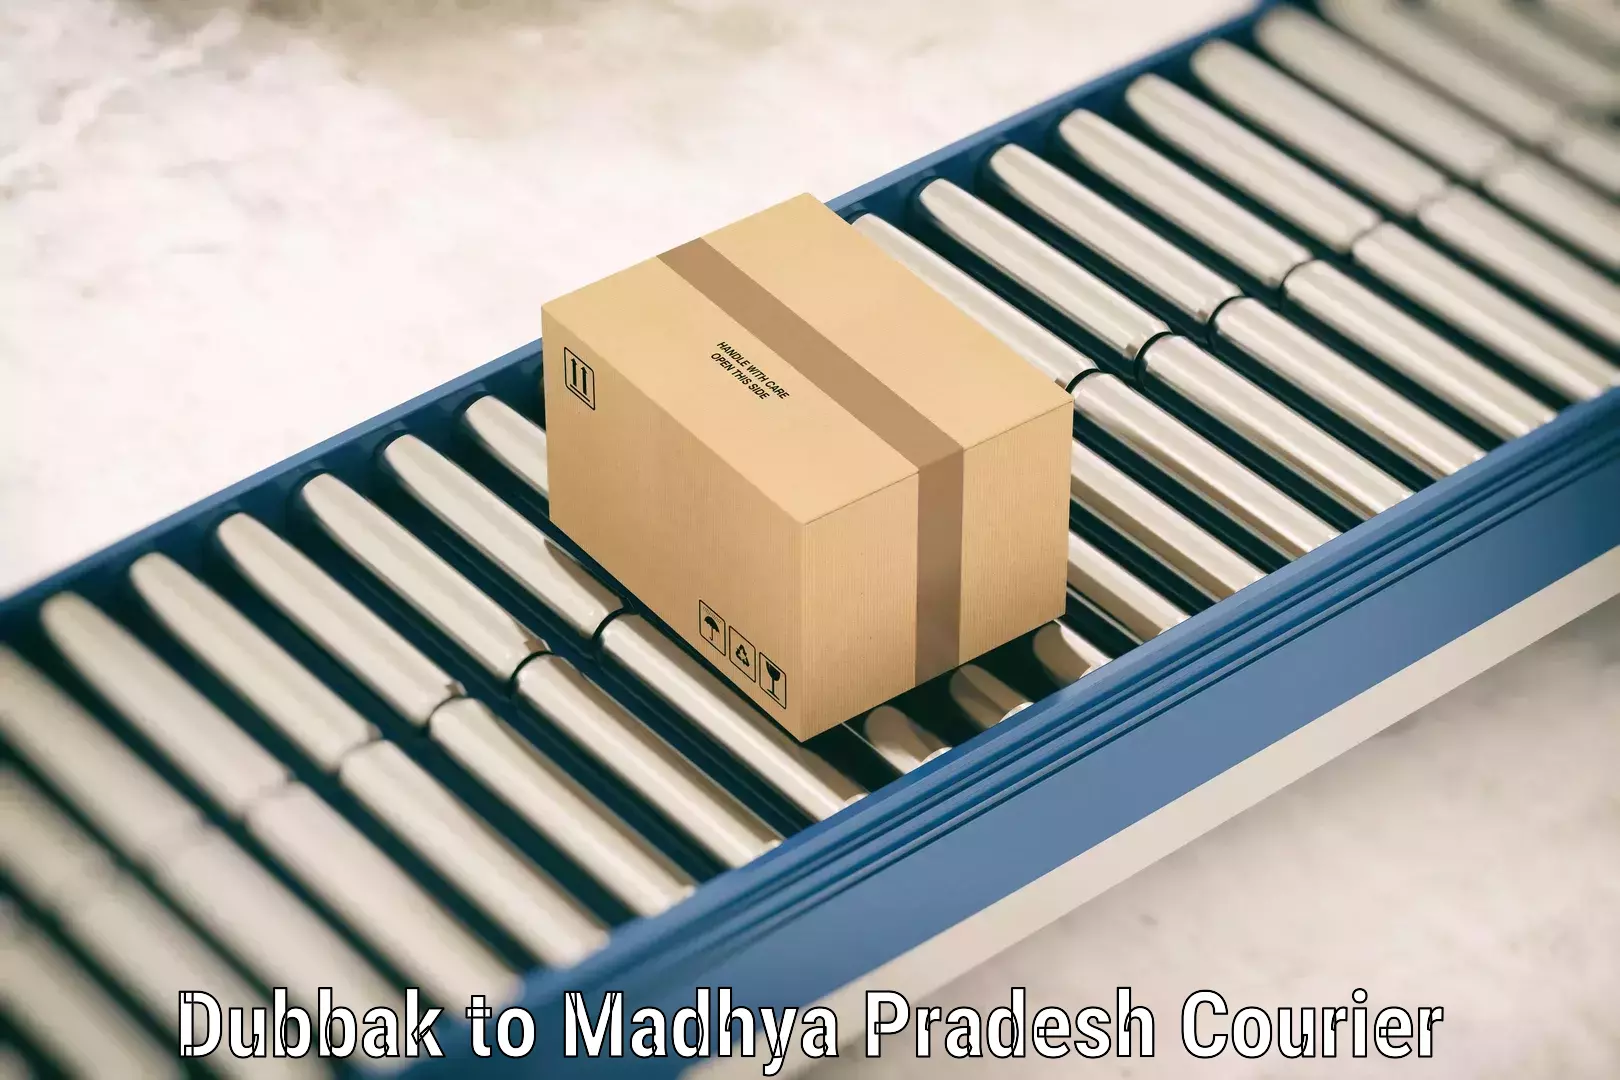 Luggage shipment strategy Dubbak to Madhya Pradesh